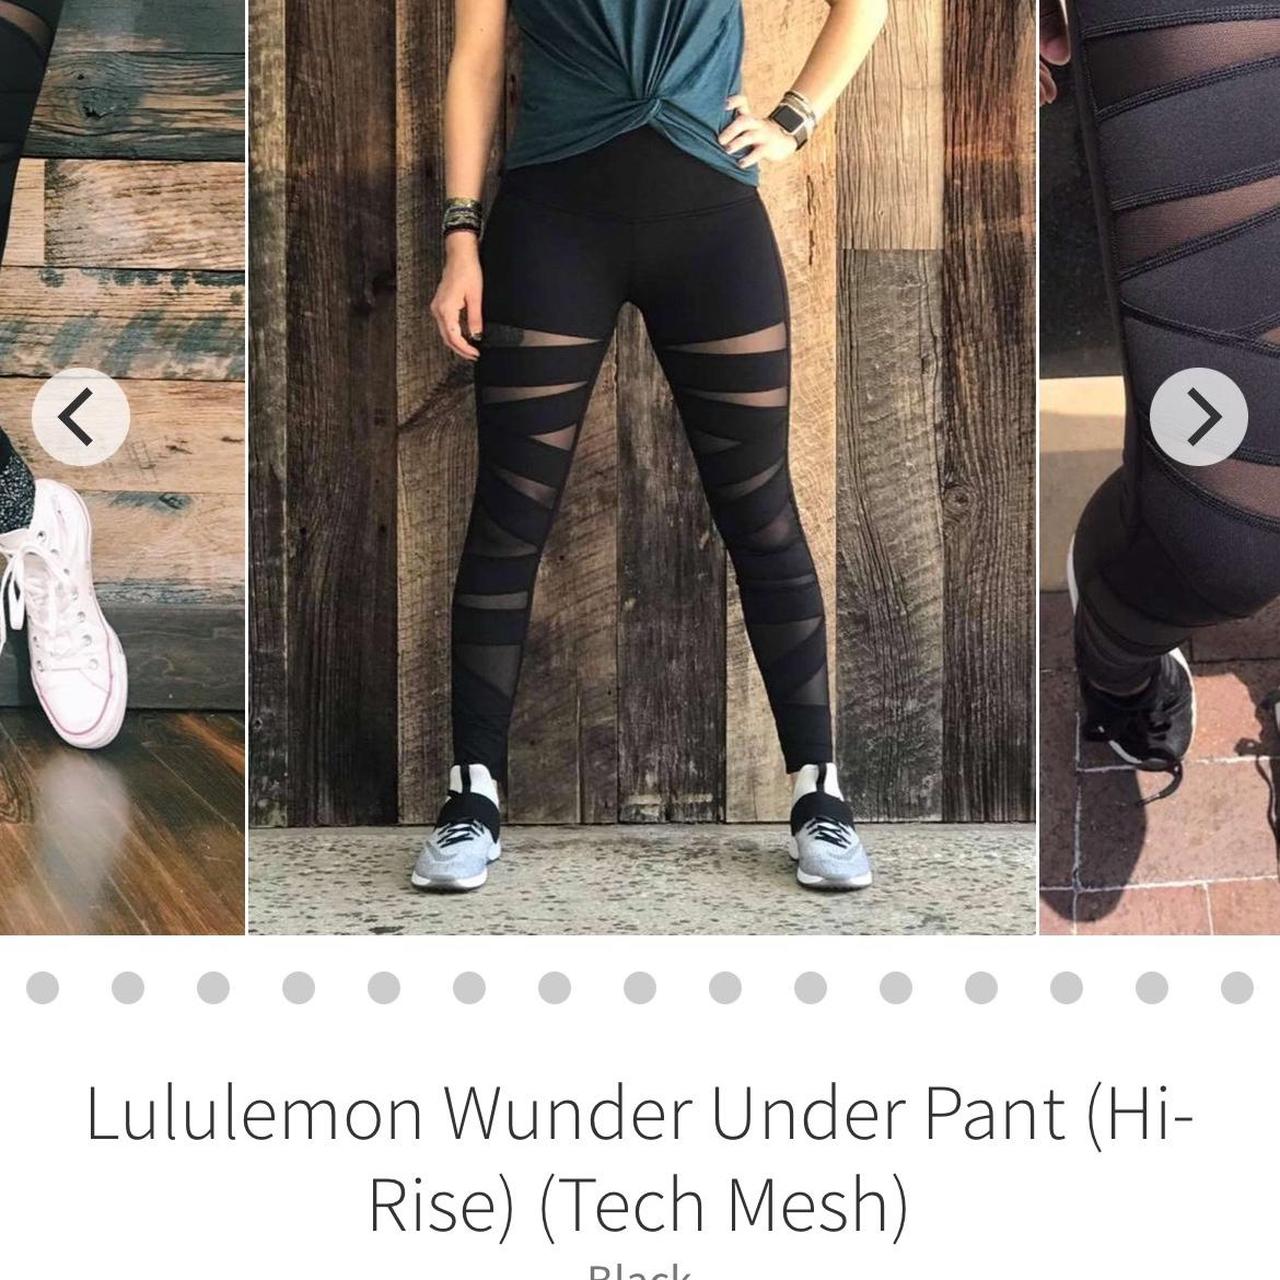 Lululemon Wunder Under Pant (Hi-Rise) Tech Mesh - Depop